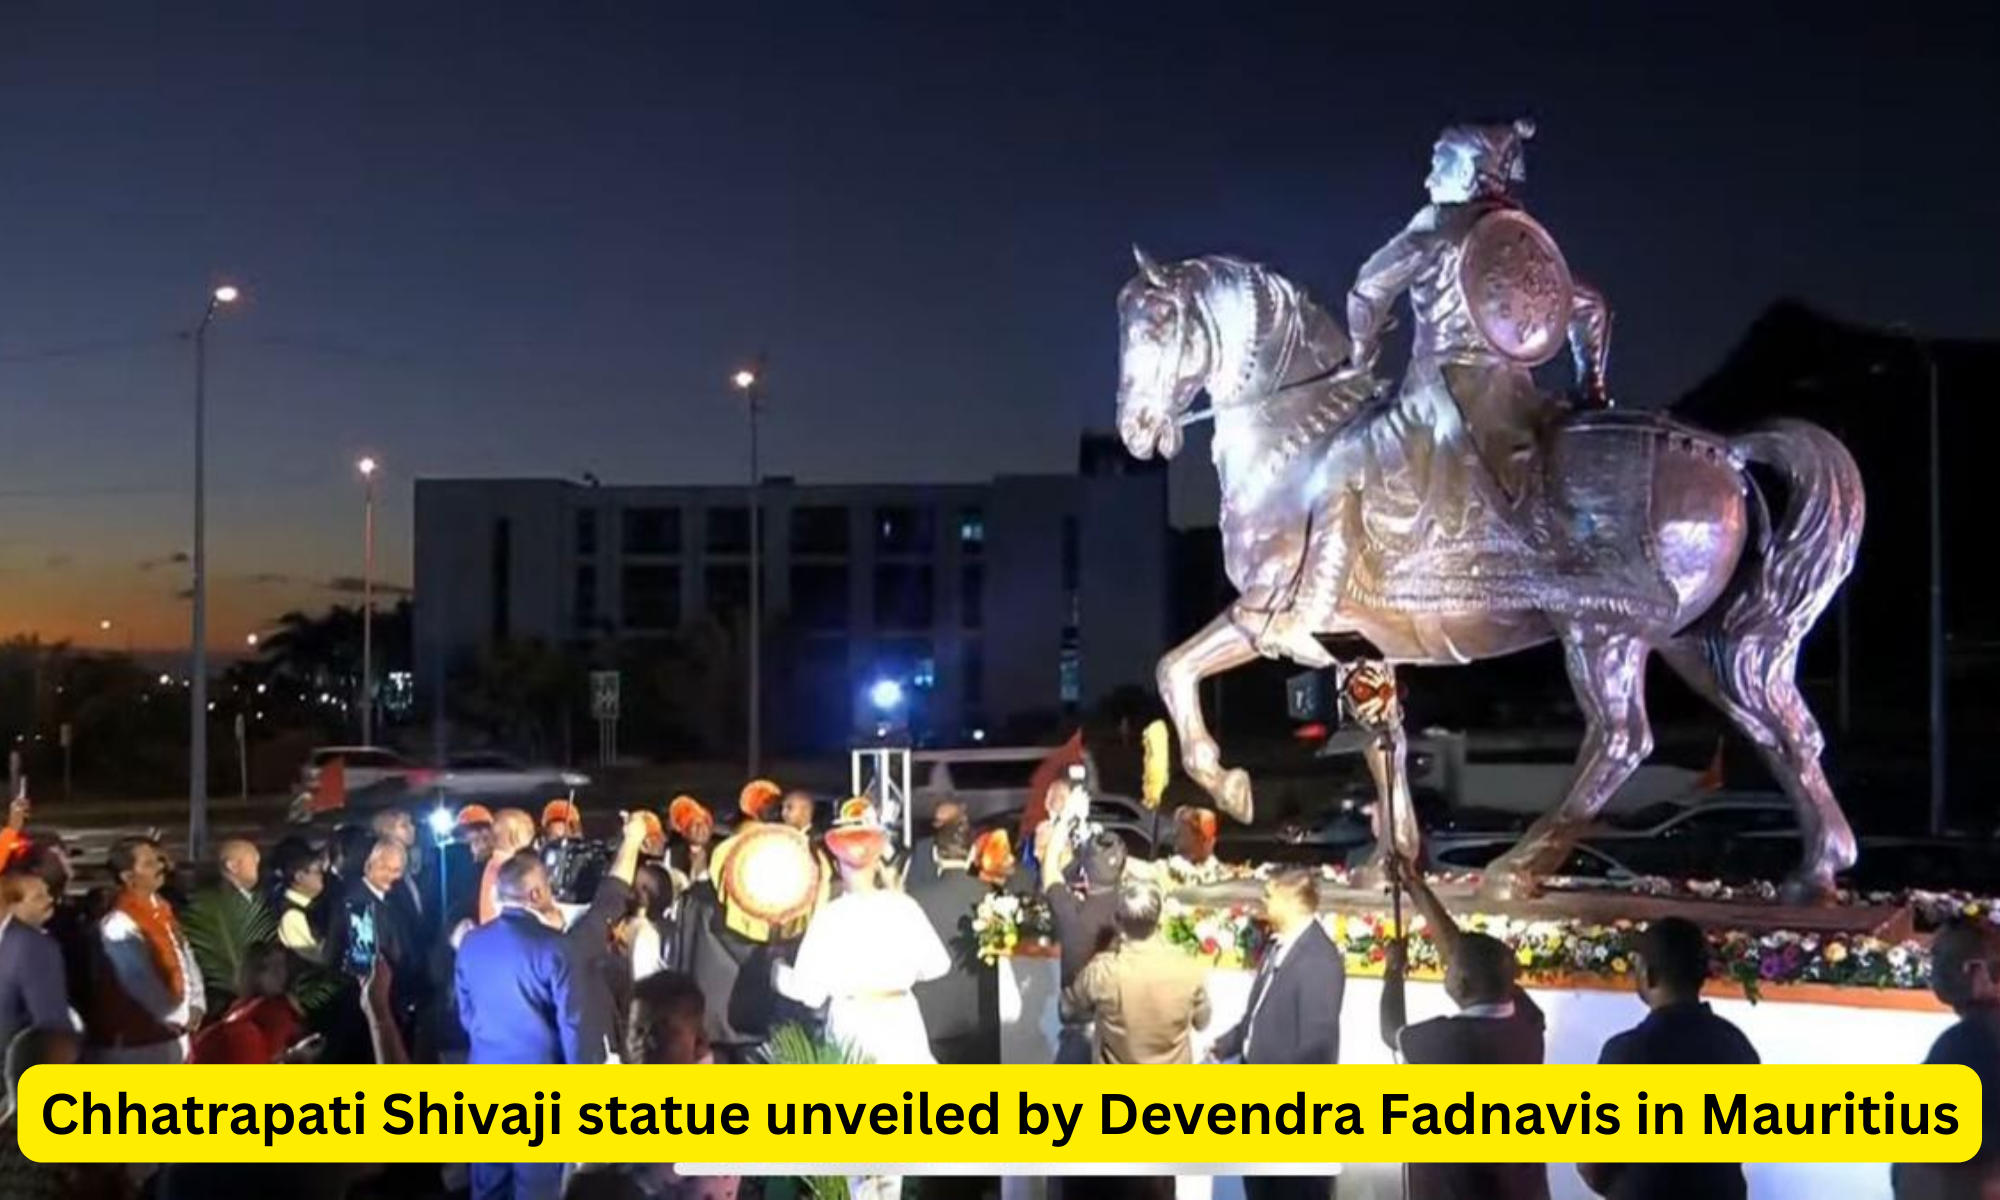 Chhatrapati Shivaji statue unveiled by Devendra Fadnavis in Mauritius